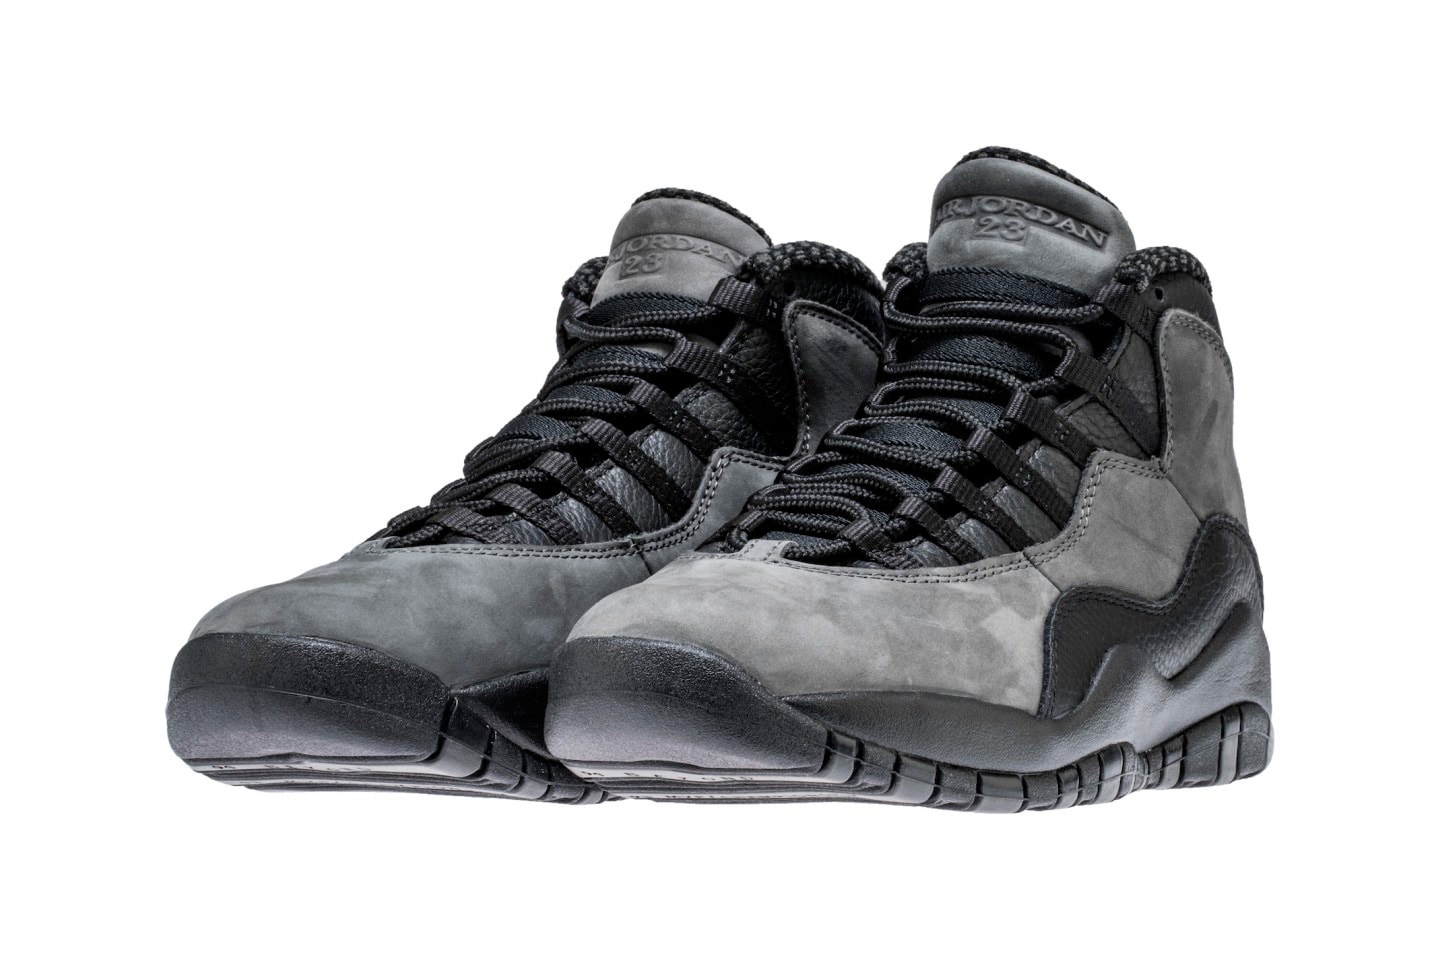 Air Jordan 10 Shadow Returns Next Month Jordan Brand Michael Jordan release dates april 2018 footwear